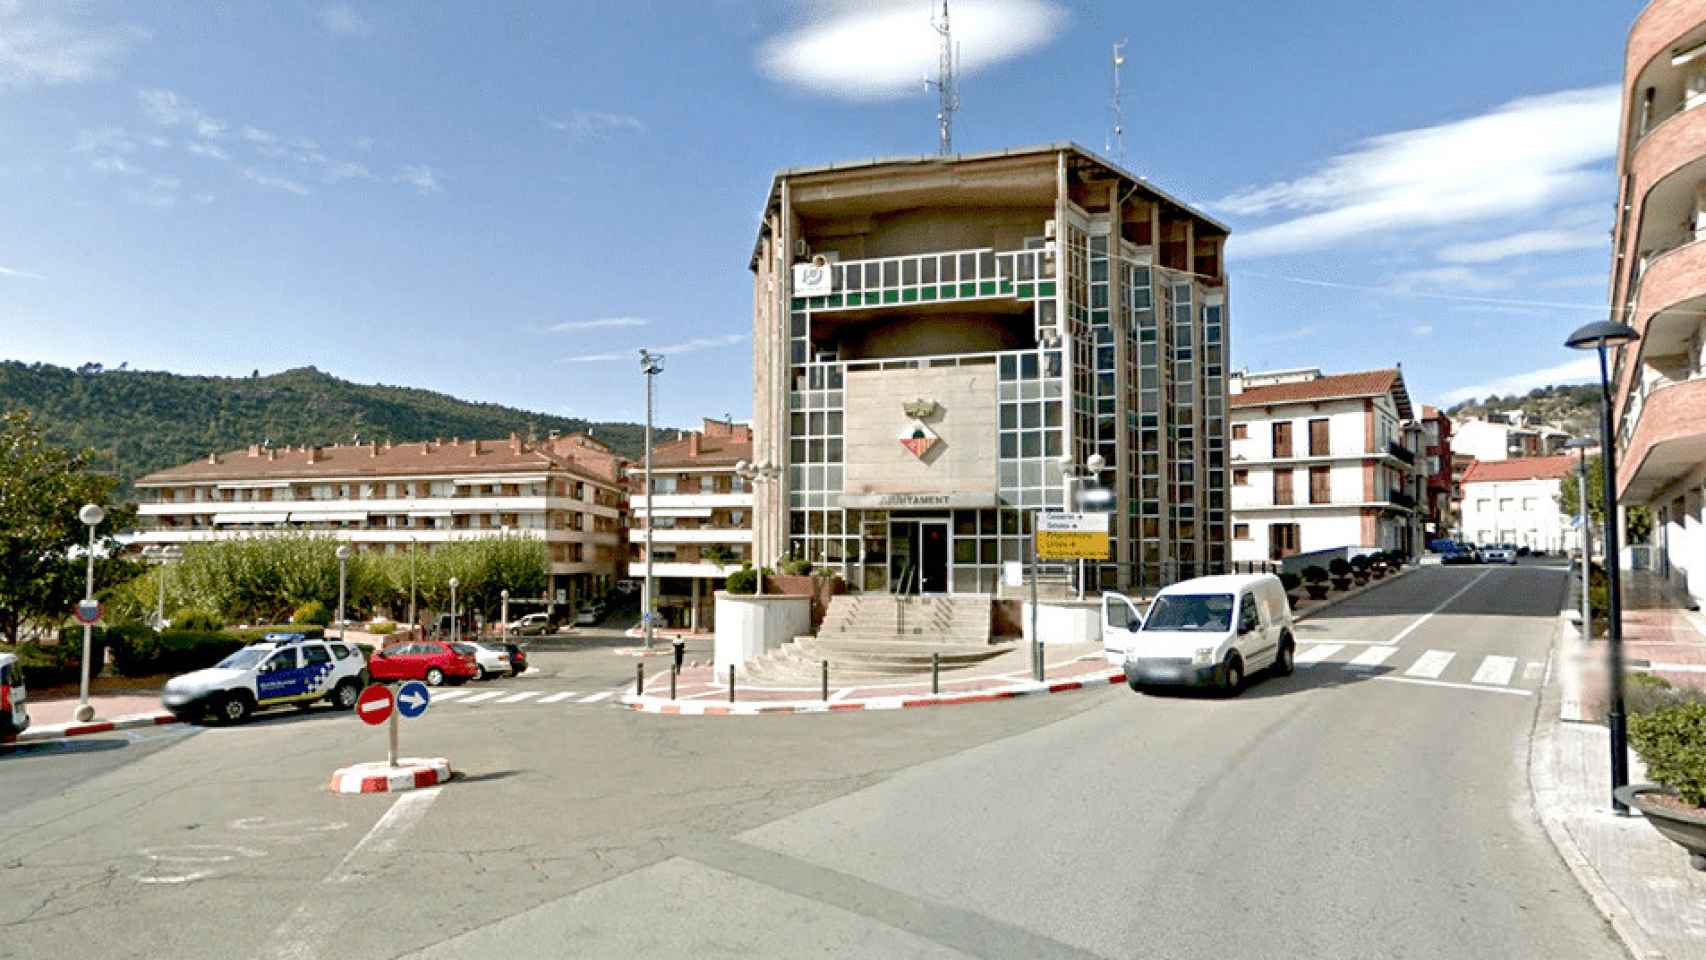 Puig-reig cierra diciembre con 164 personas en paro